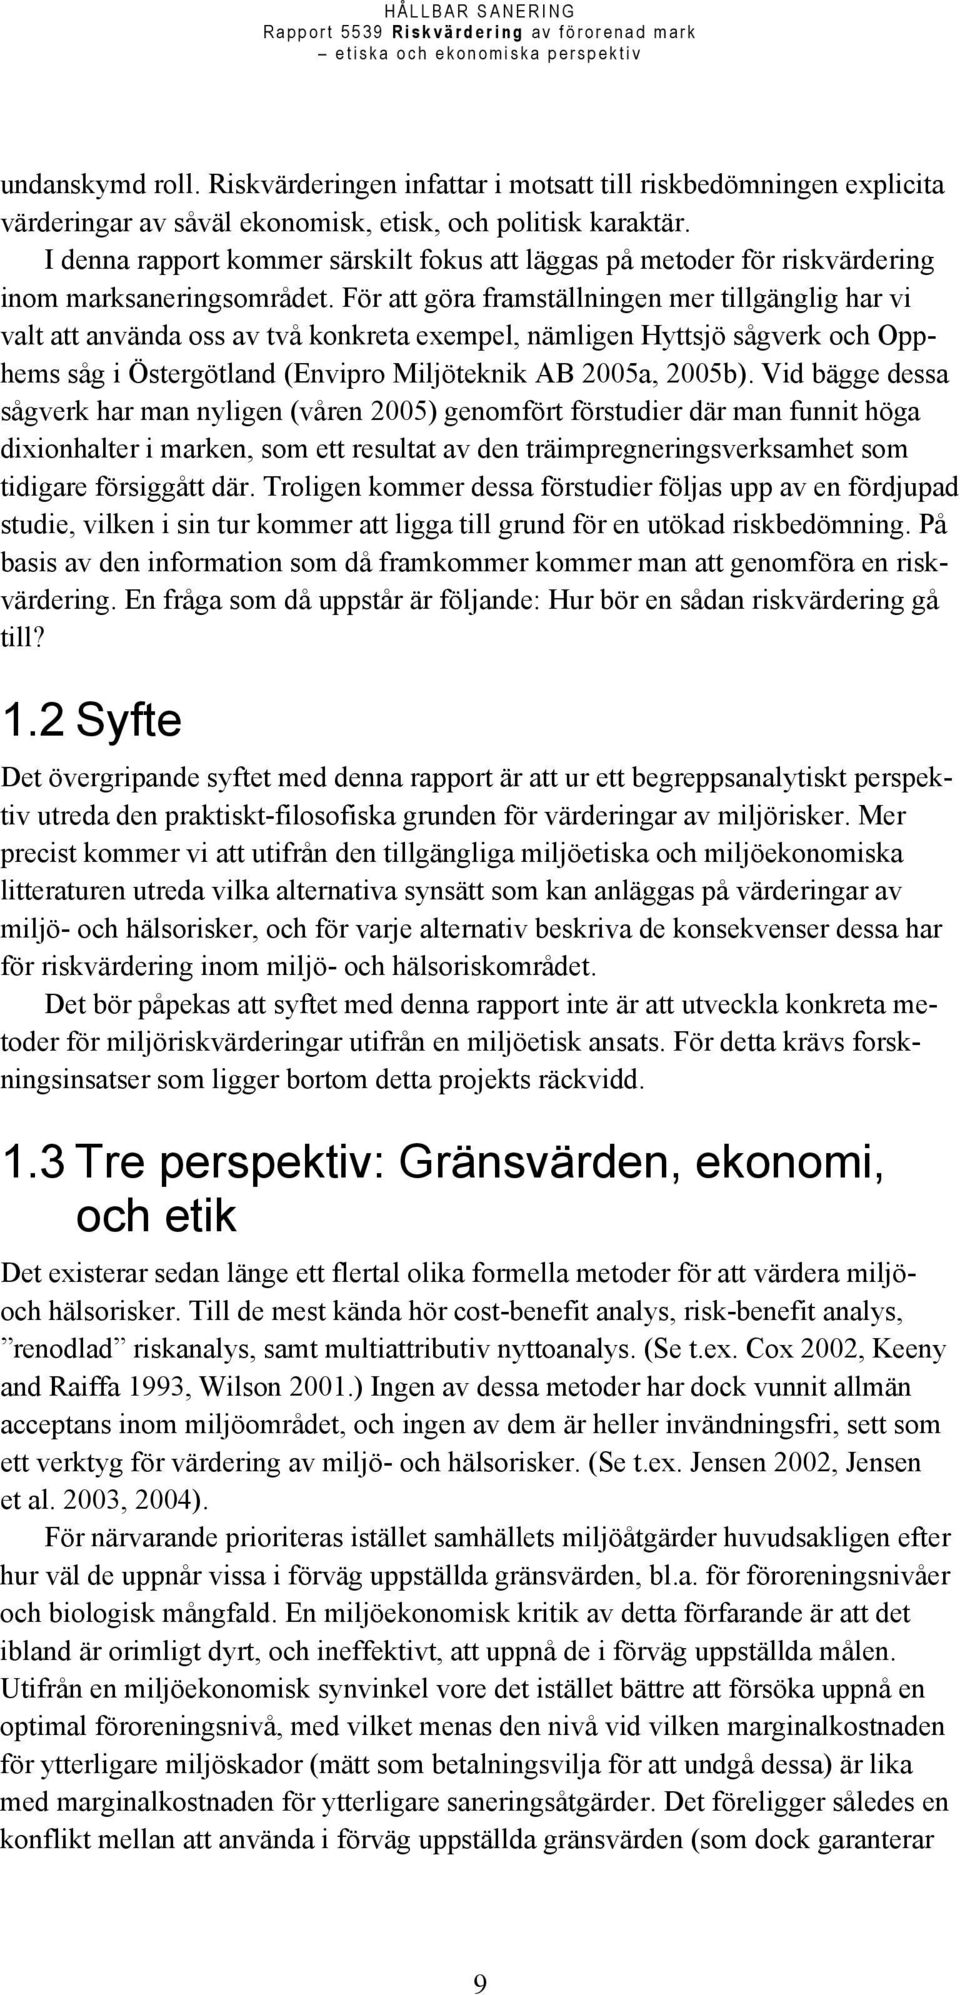 För att göra framställningen mer tillgänglig har vi valt att använda oss av två konkreta exempel, nämligen Hyttsjö sågverk och Opphems såg i Östergötland (Envipro Miljöteknik AB 2005a, 2005b).